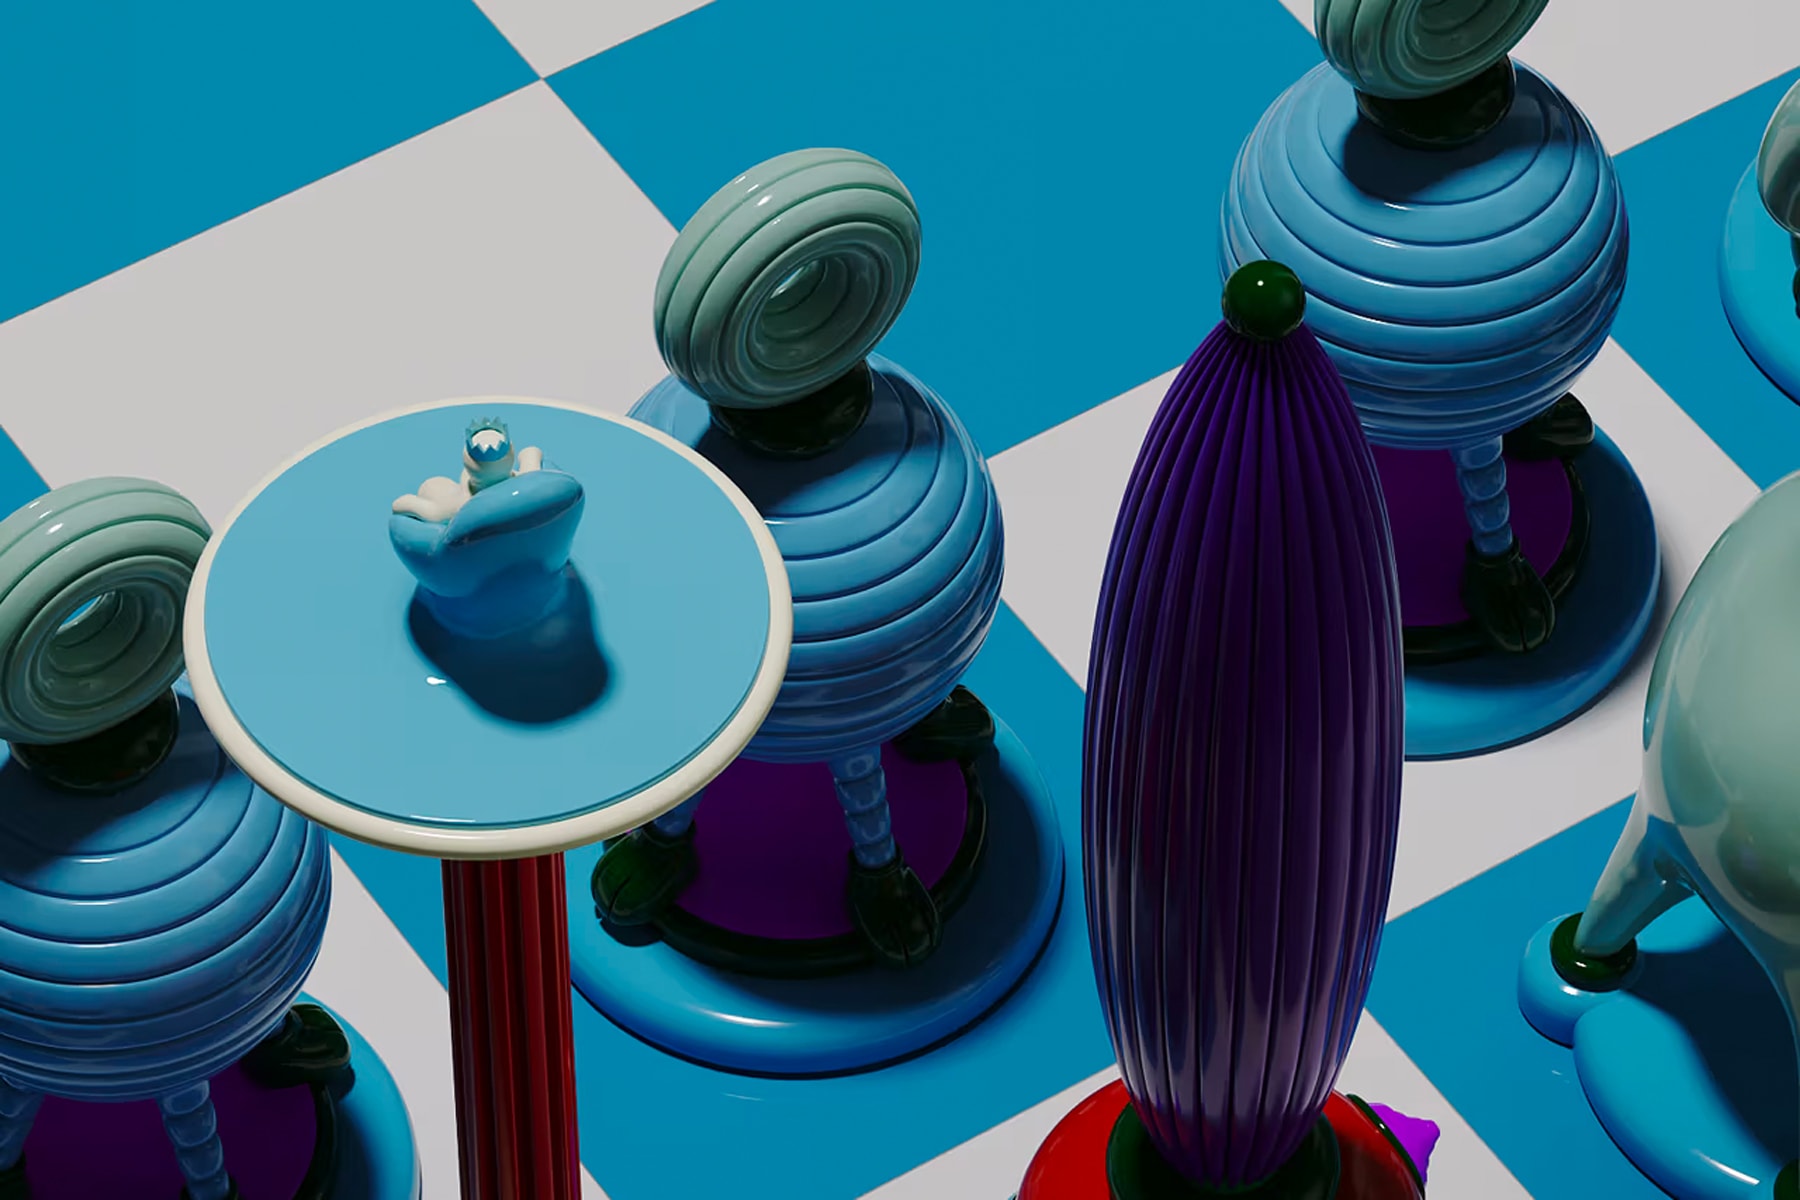 紐約藝術家 Taras Yoom 正式推出全新西洋棋套組「Another Kingdom : Light Stage」